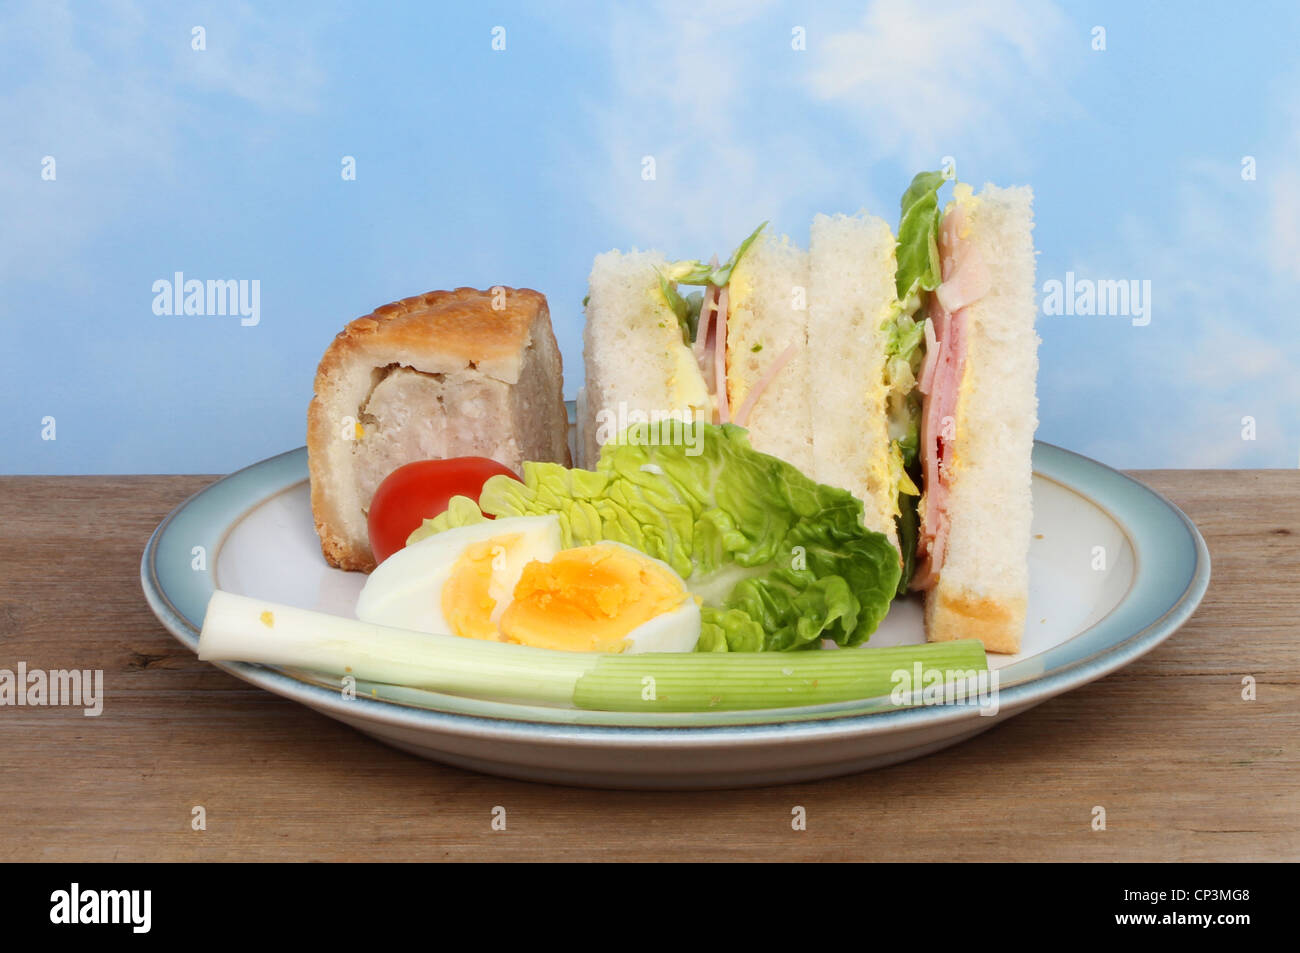 Une assiette de nourriture pique-nique sur une planche en bois contre un ciel d'été bleu Banque D'Images